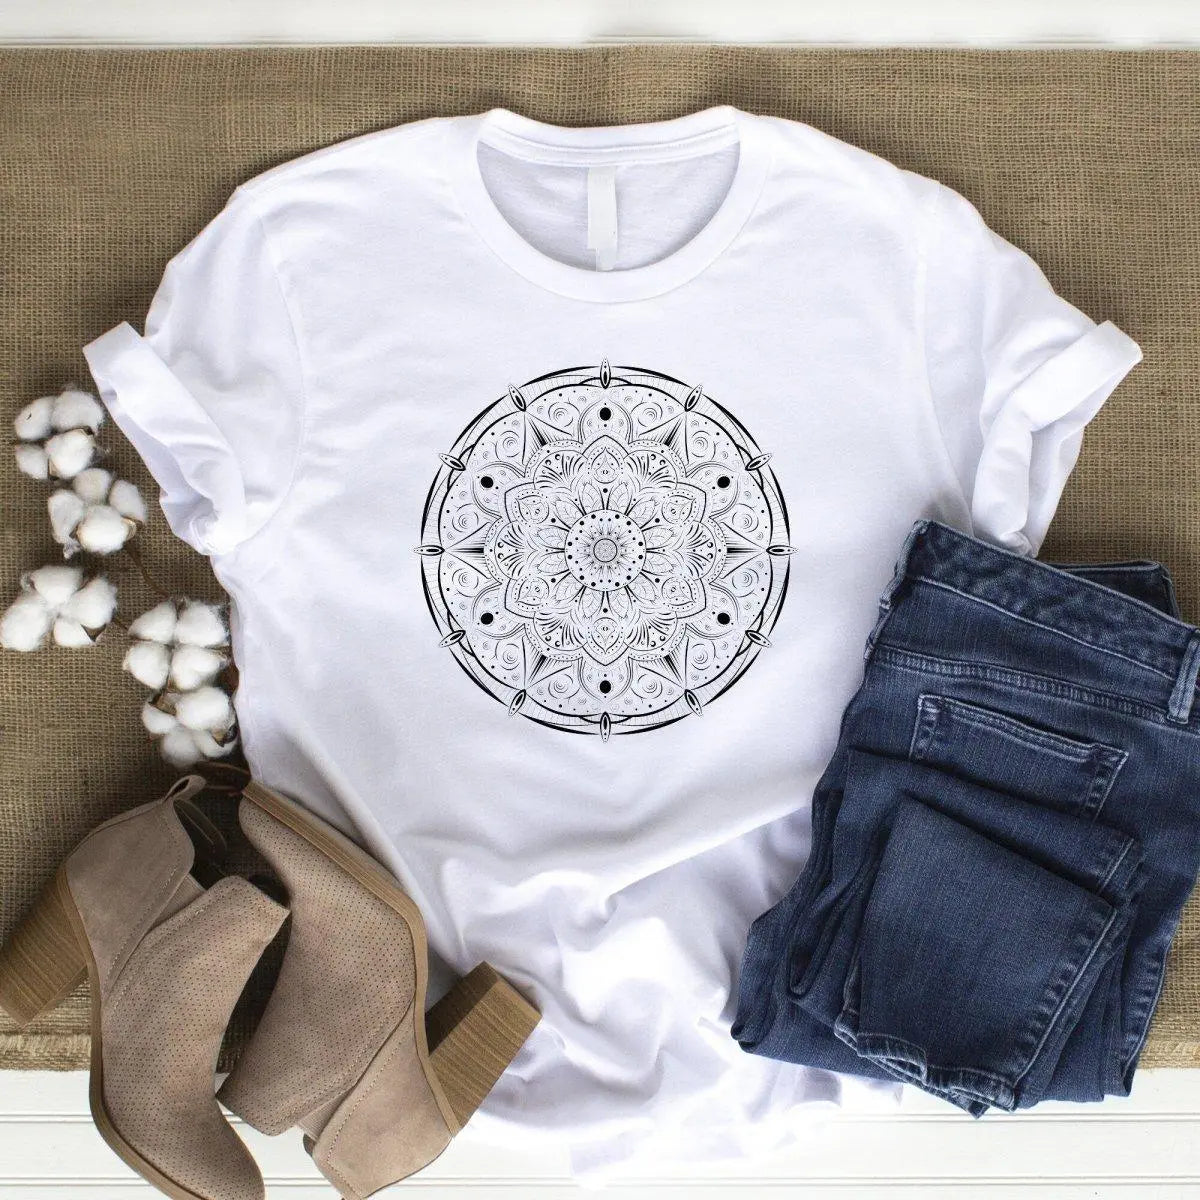 Mandala Flower T-shirt, Mandala Shirt, Womens Boho Tee, Bohemian Casual T Shirt Women, Mandala Gift for Her, Lounge Wear Tshirt, Hippie Top - Amy Lucy